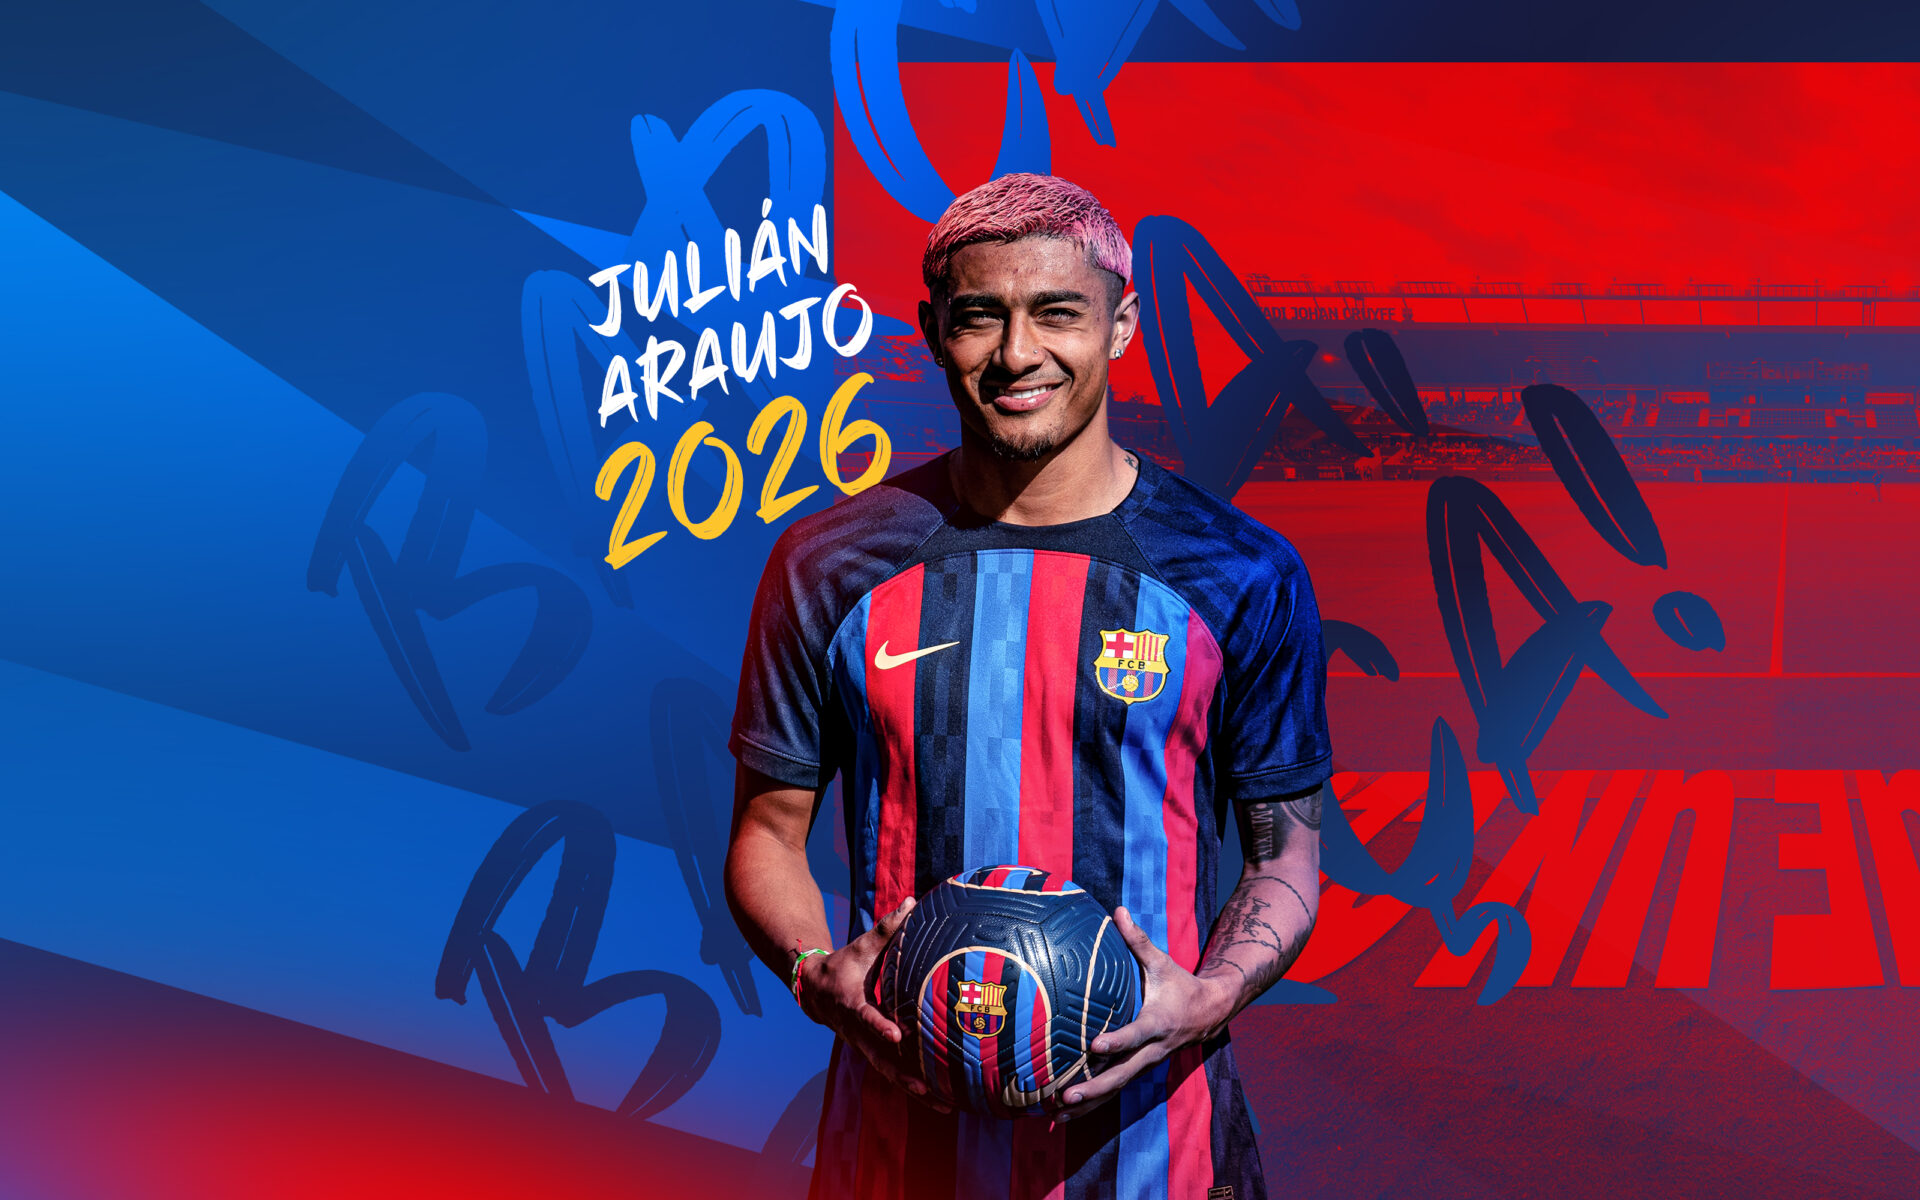 Julián Araújo mit FC Porto in Verbindung gebracht: „Zeigte Interesse an einer Leihe“